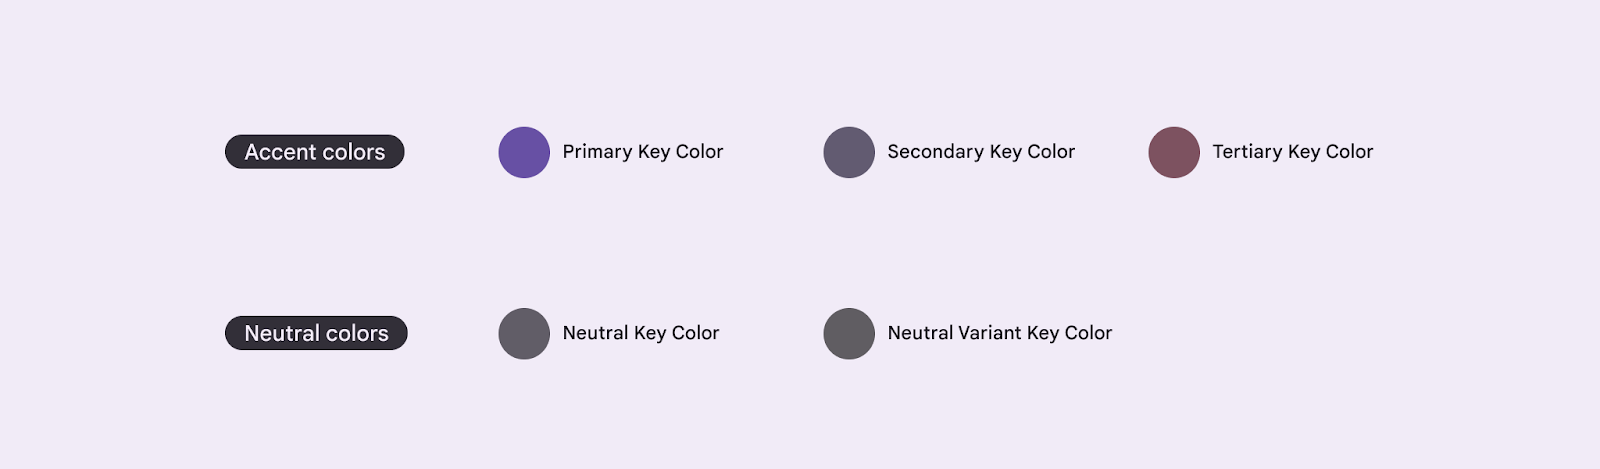 Cinco cores principais de valor de referência para criar um tema do M3.